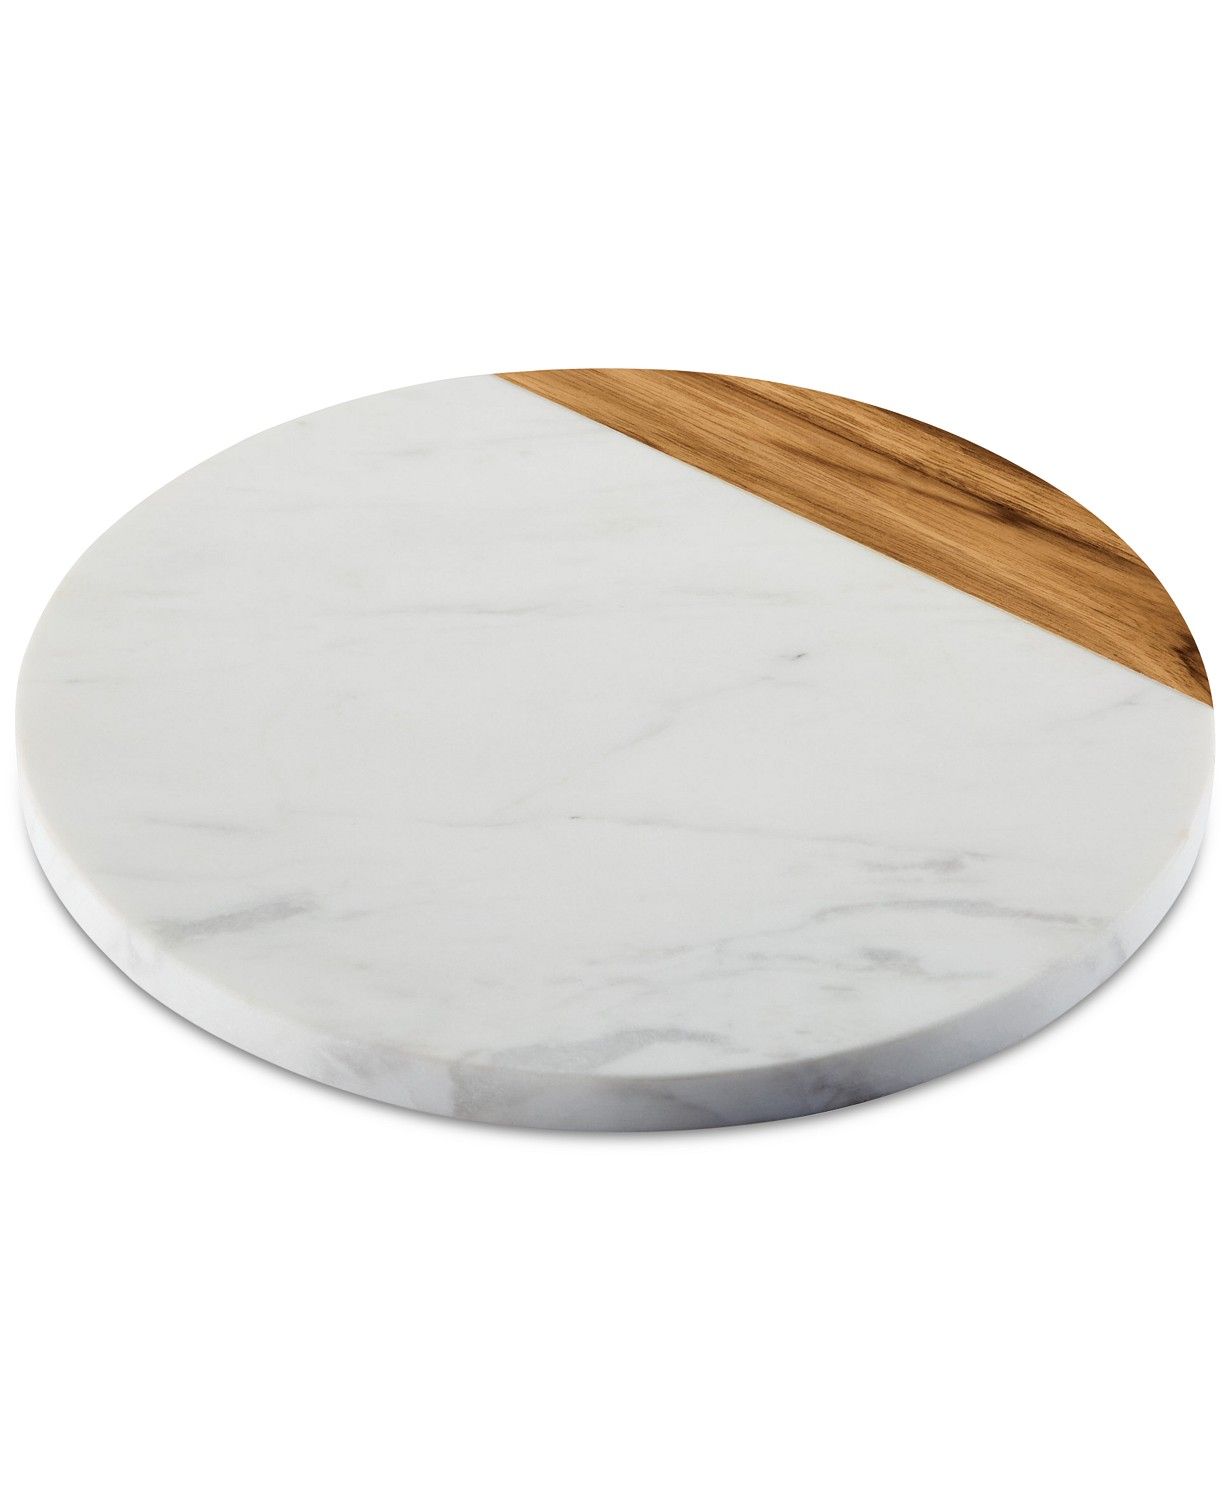 Pantryware White Marble & Teak Wood 10" Round Serving Board | Macys (US)